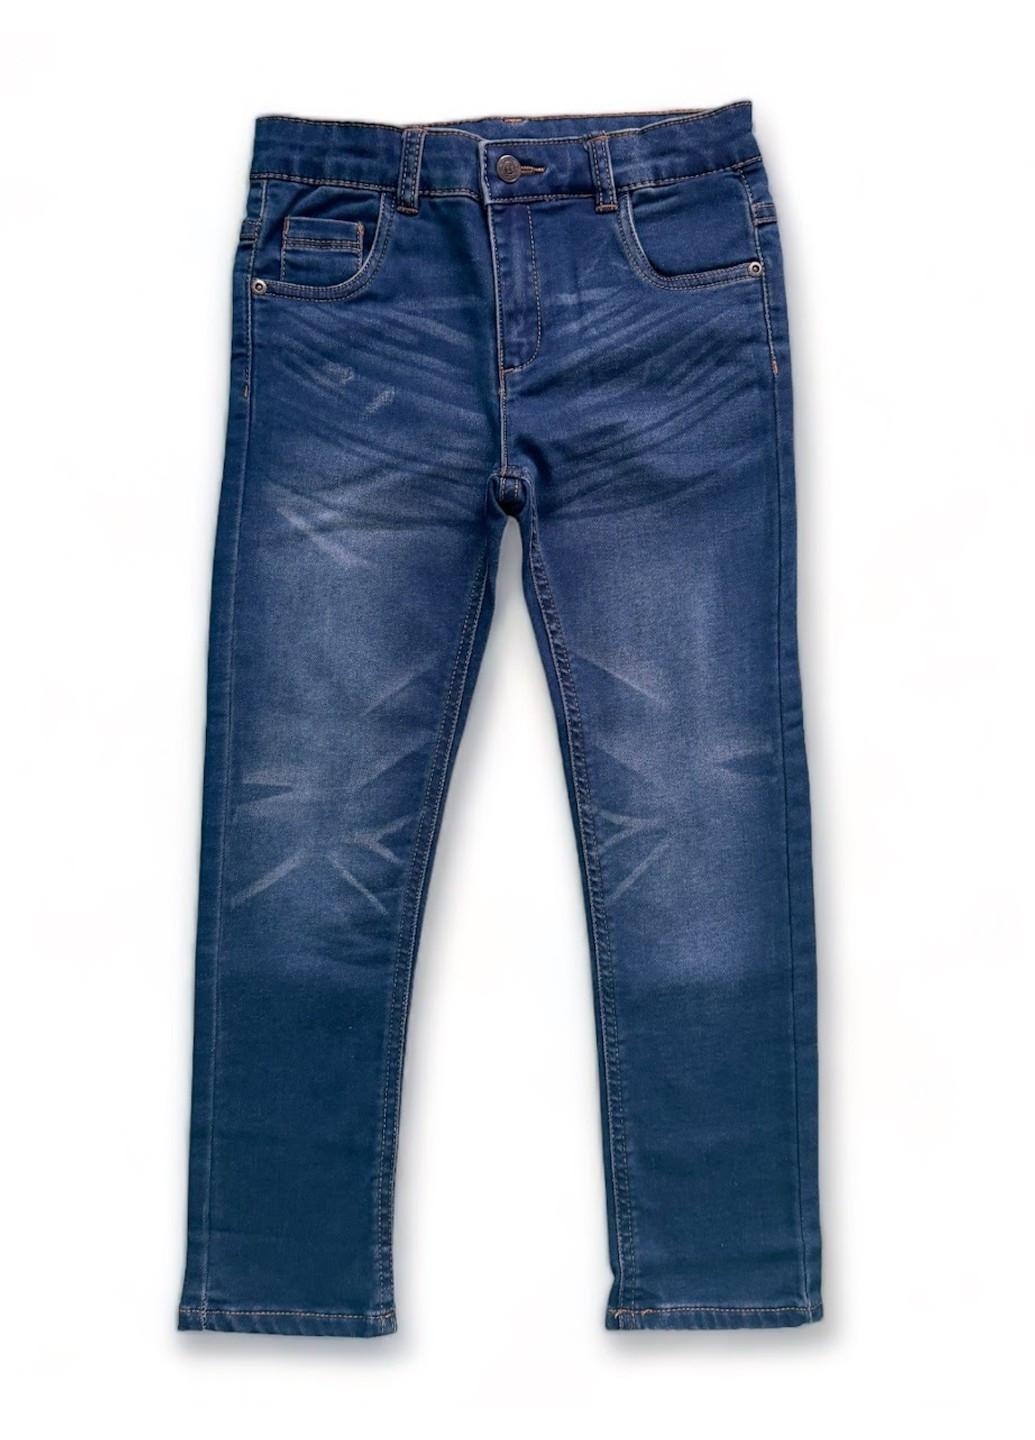 Синие джинсы стрейчевые прямые Chicco